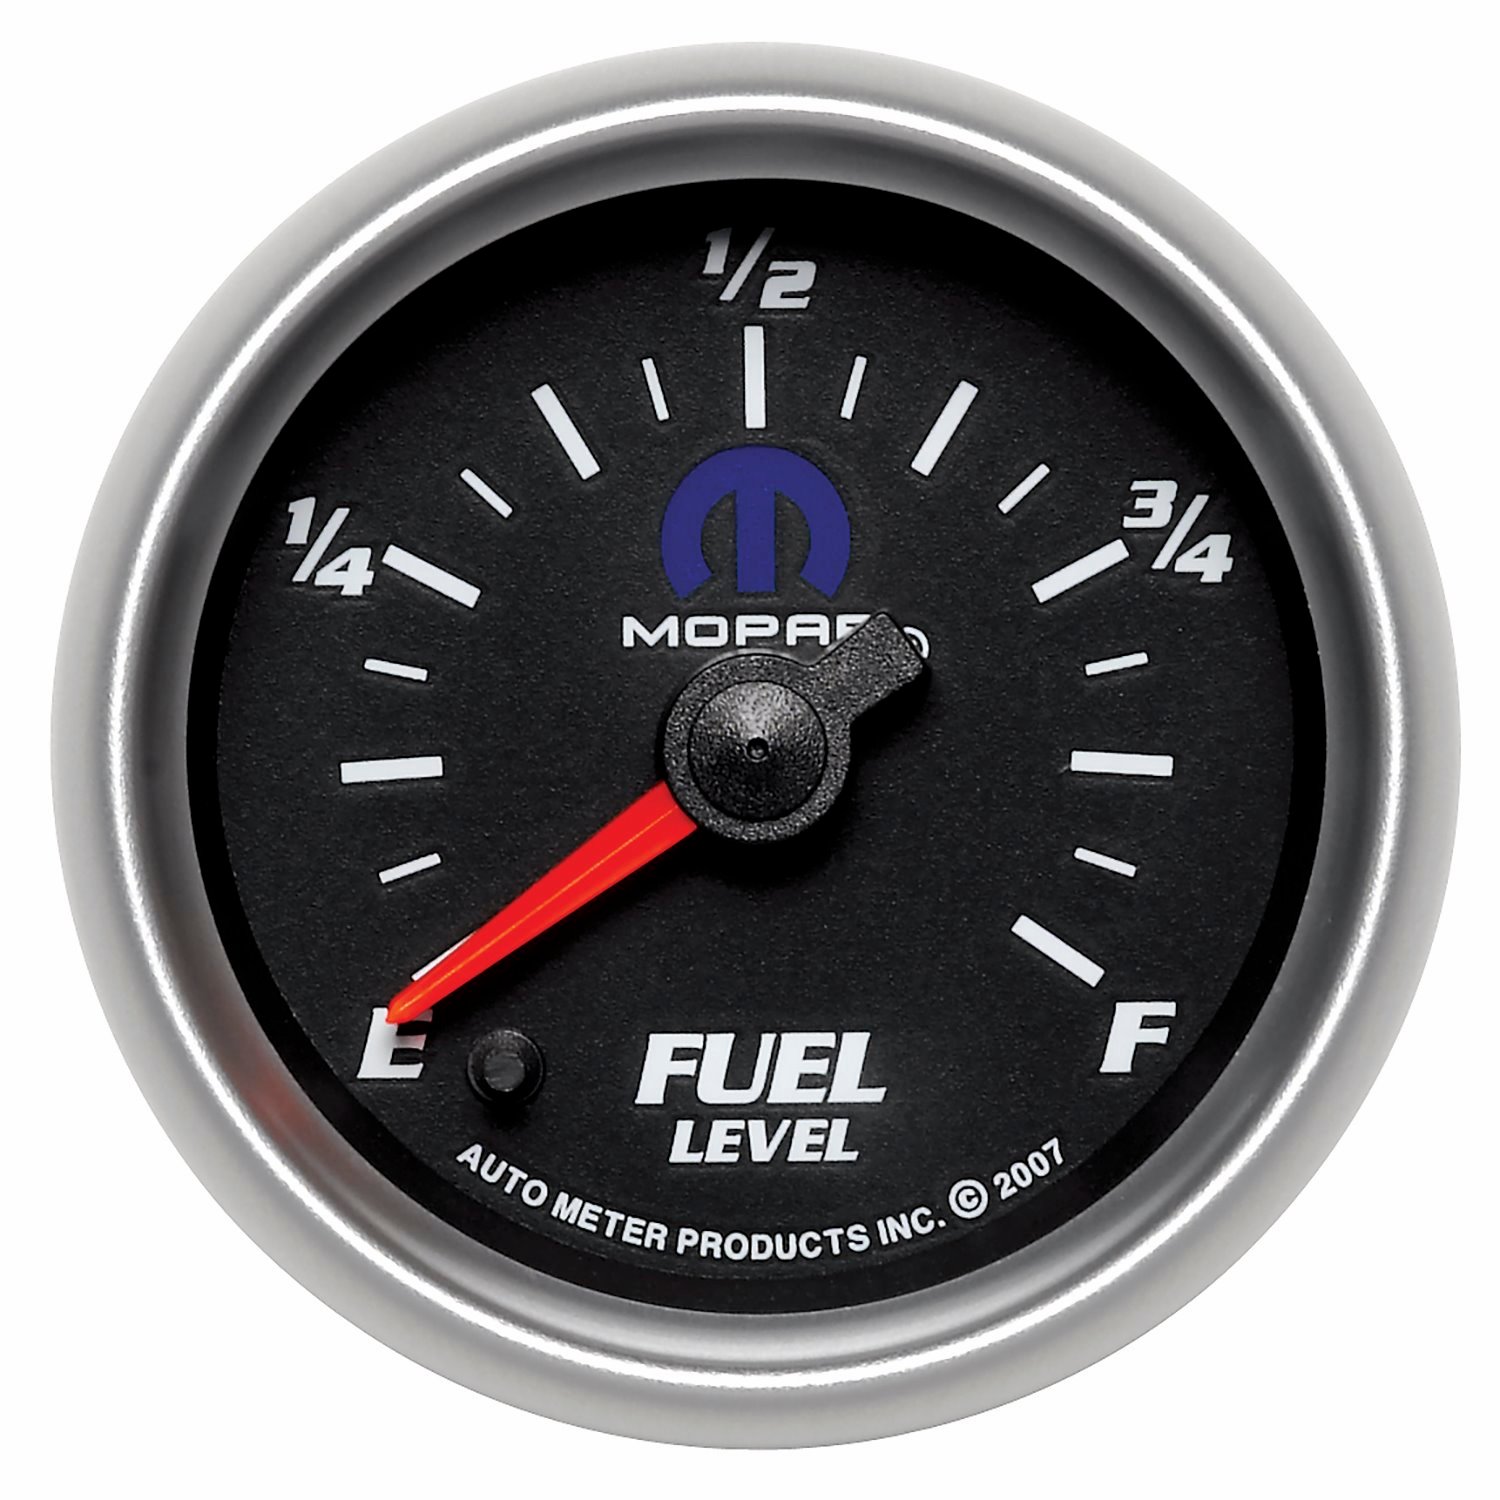 Officially Licensed Mopar Fuel Level Gauge 2-1/16